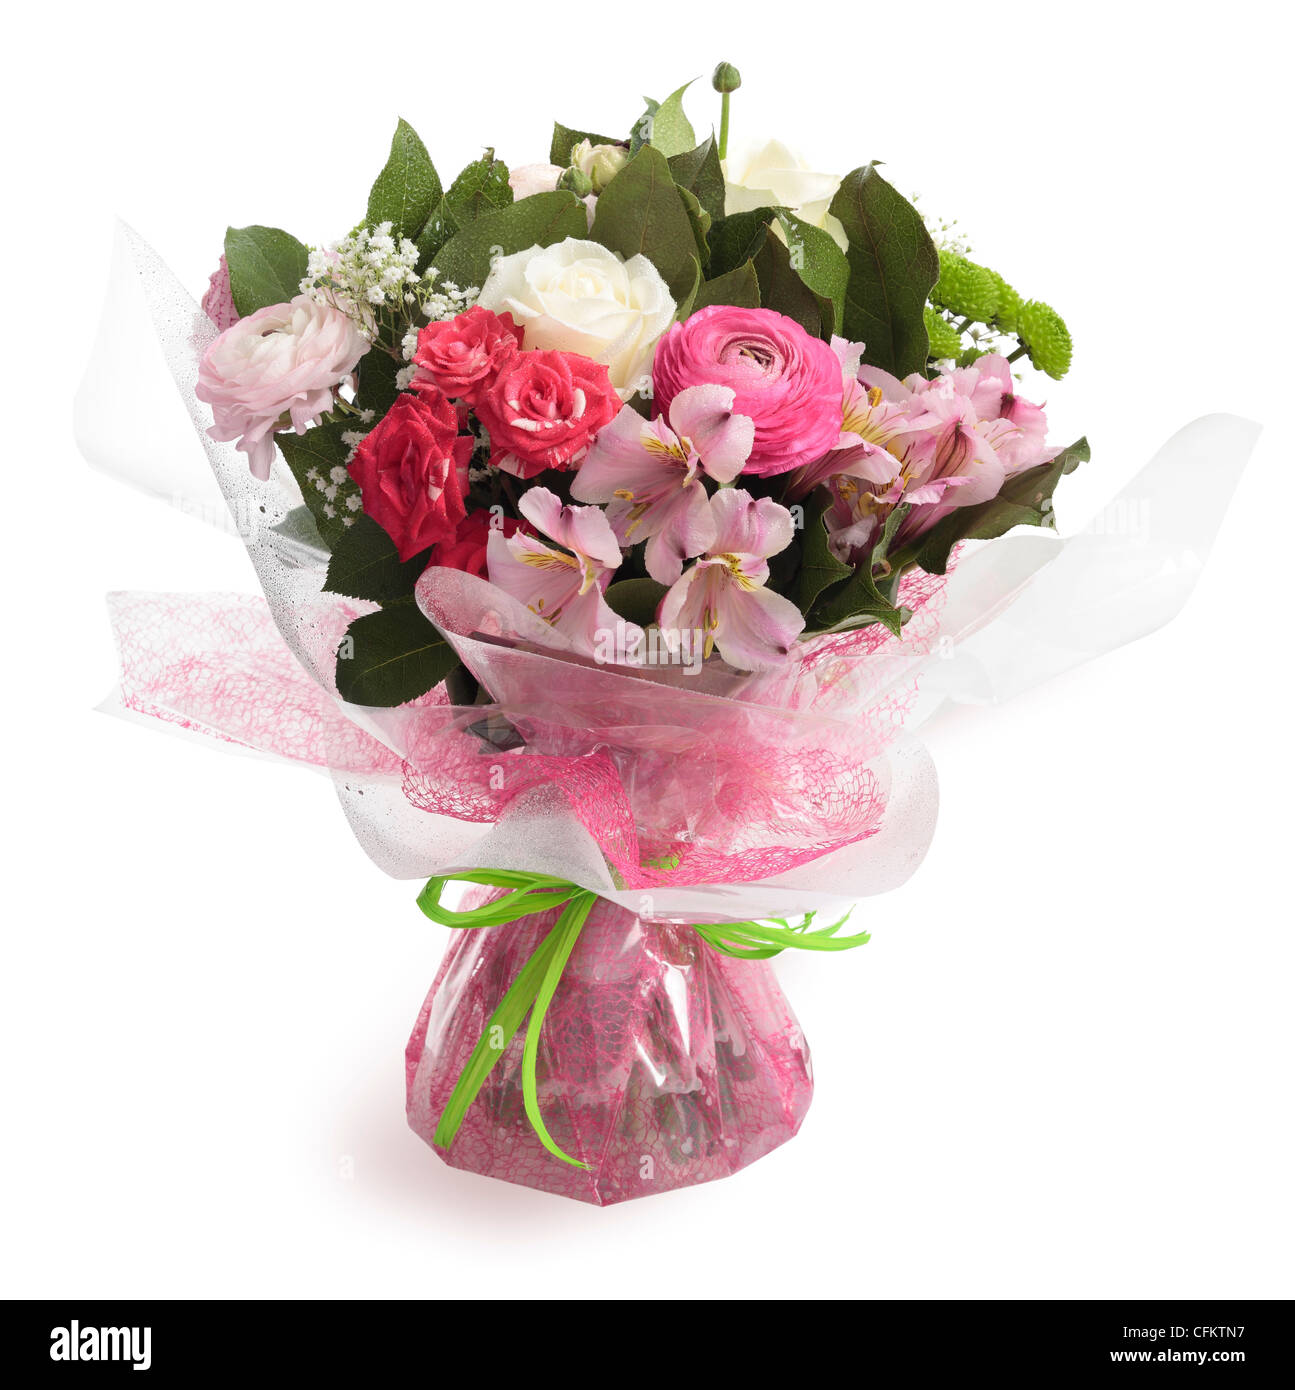 Bouquet de flores incluyendo las rosas, ranunculus, alstroemeria, lirio Peruano y verde de crisantemo. Foto de stock